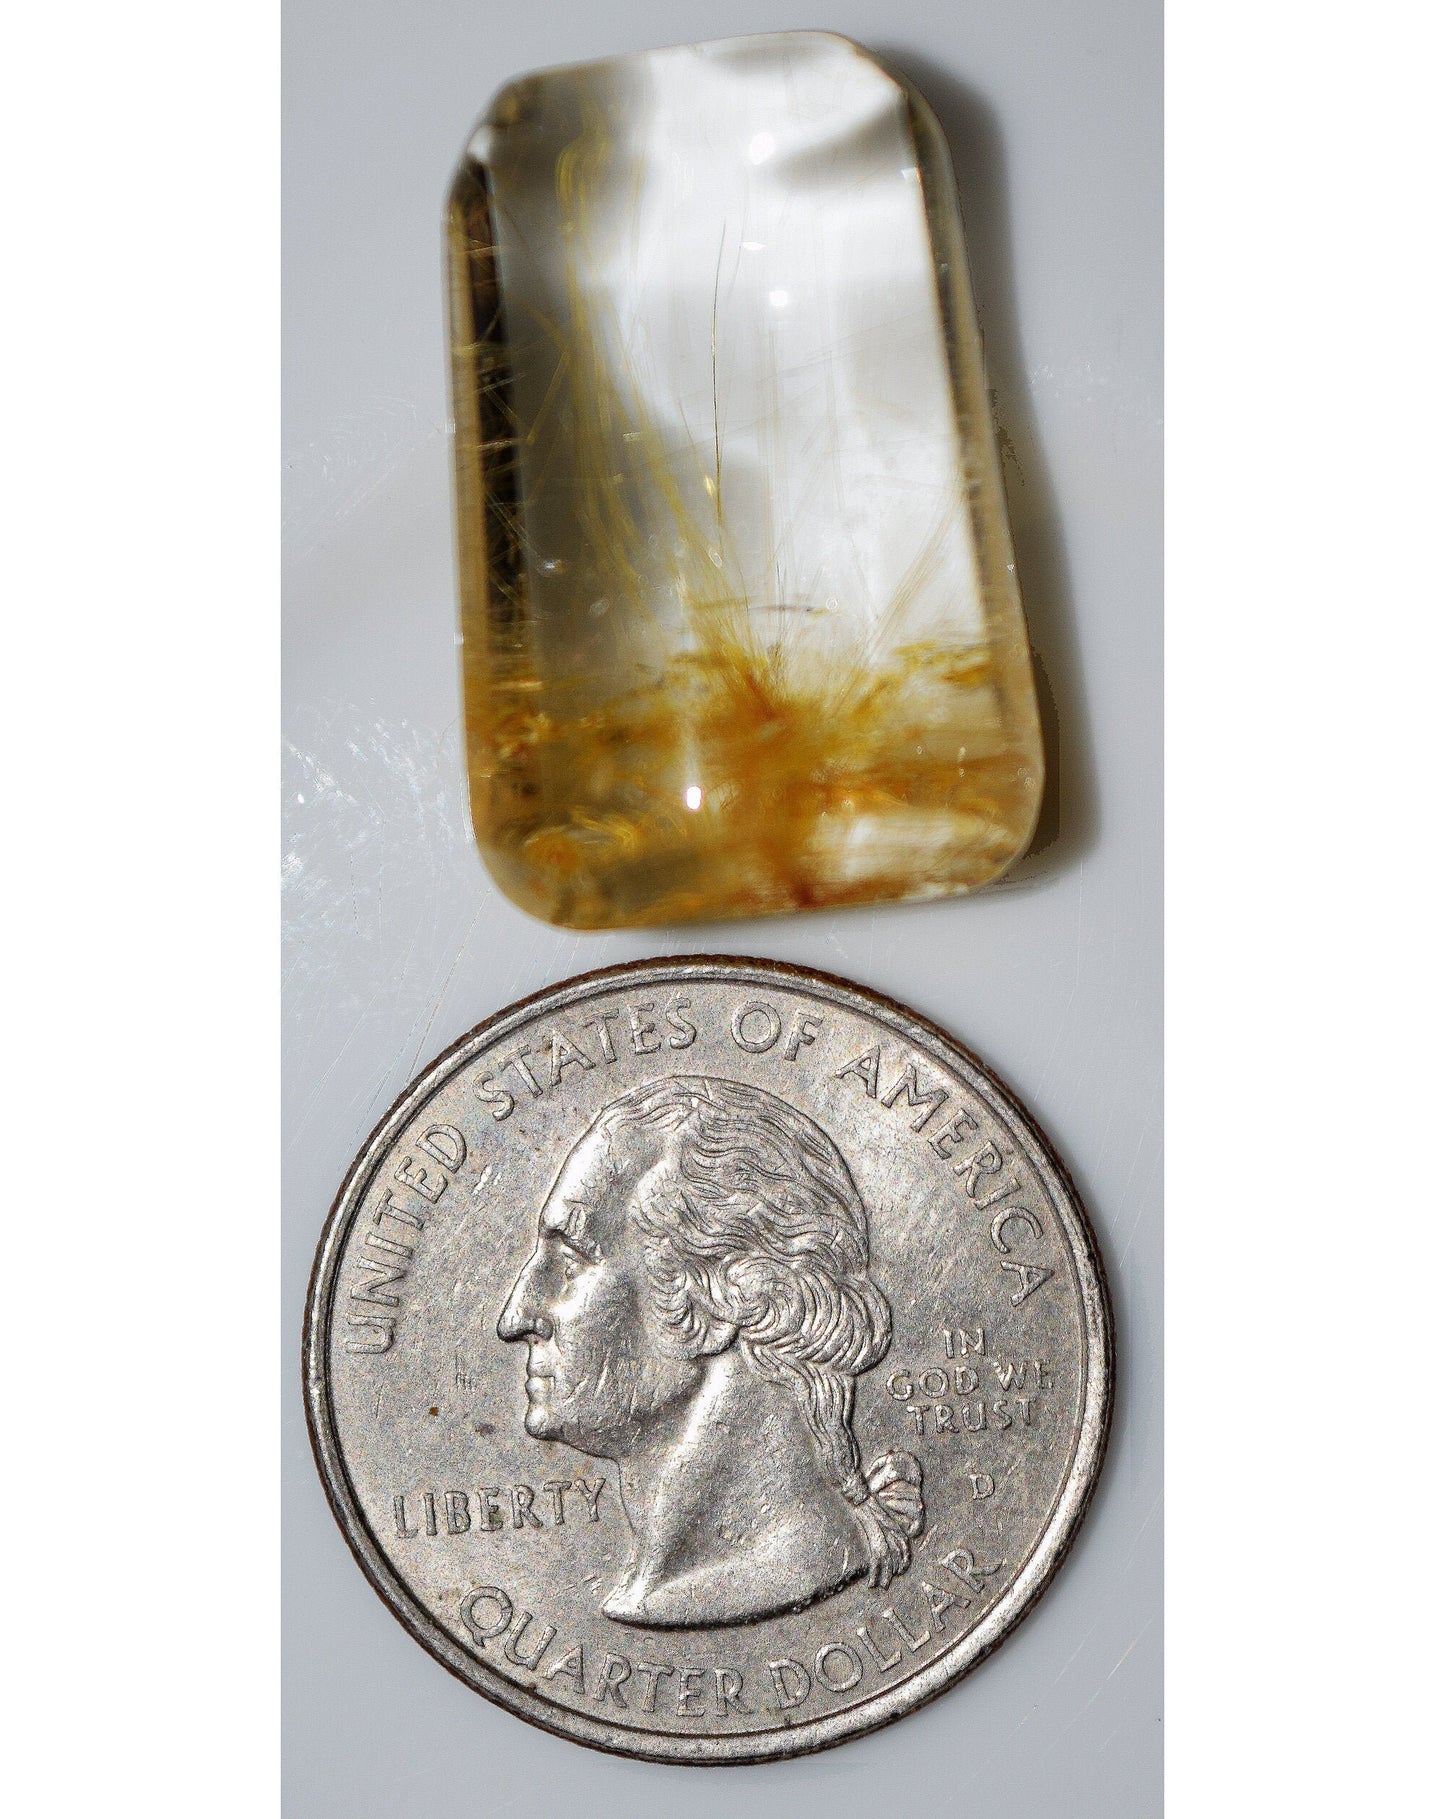 Angel hair rutile in glass-clear quartz! What a gem!